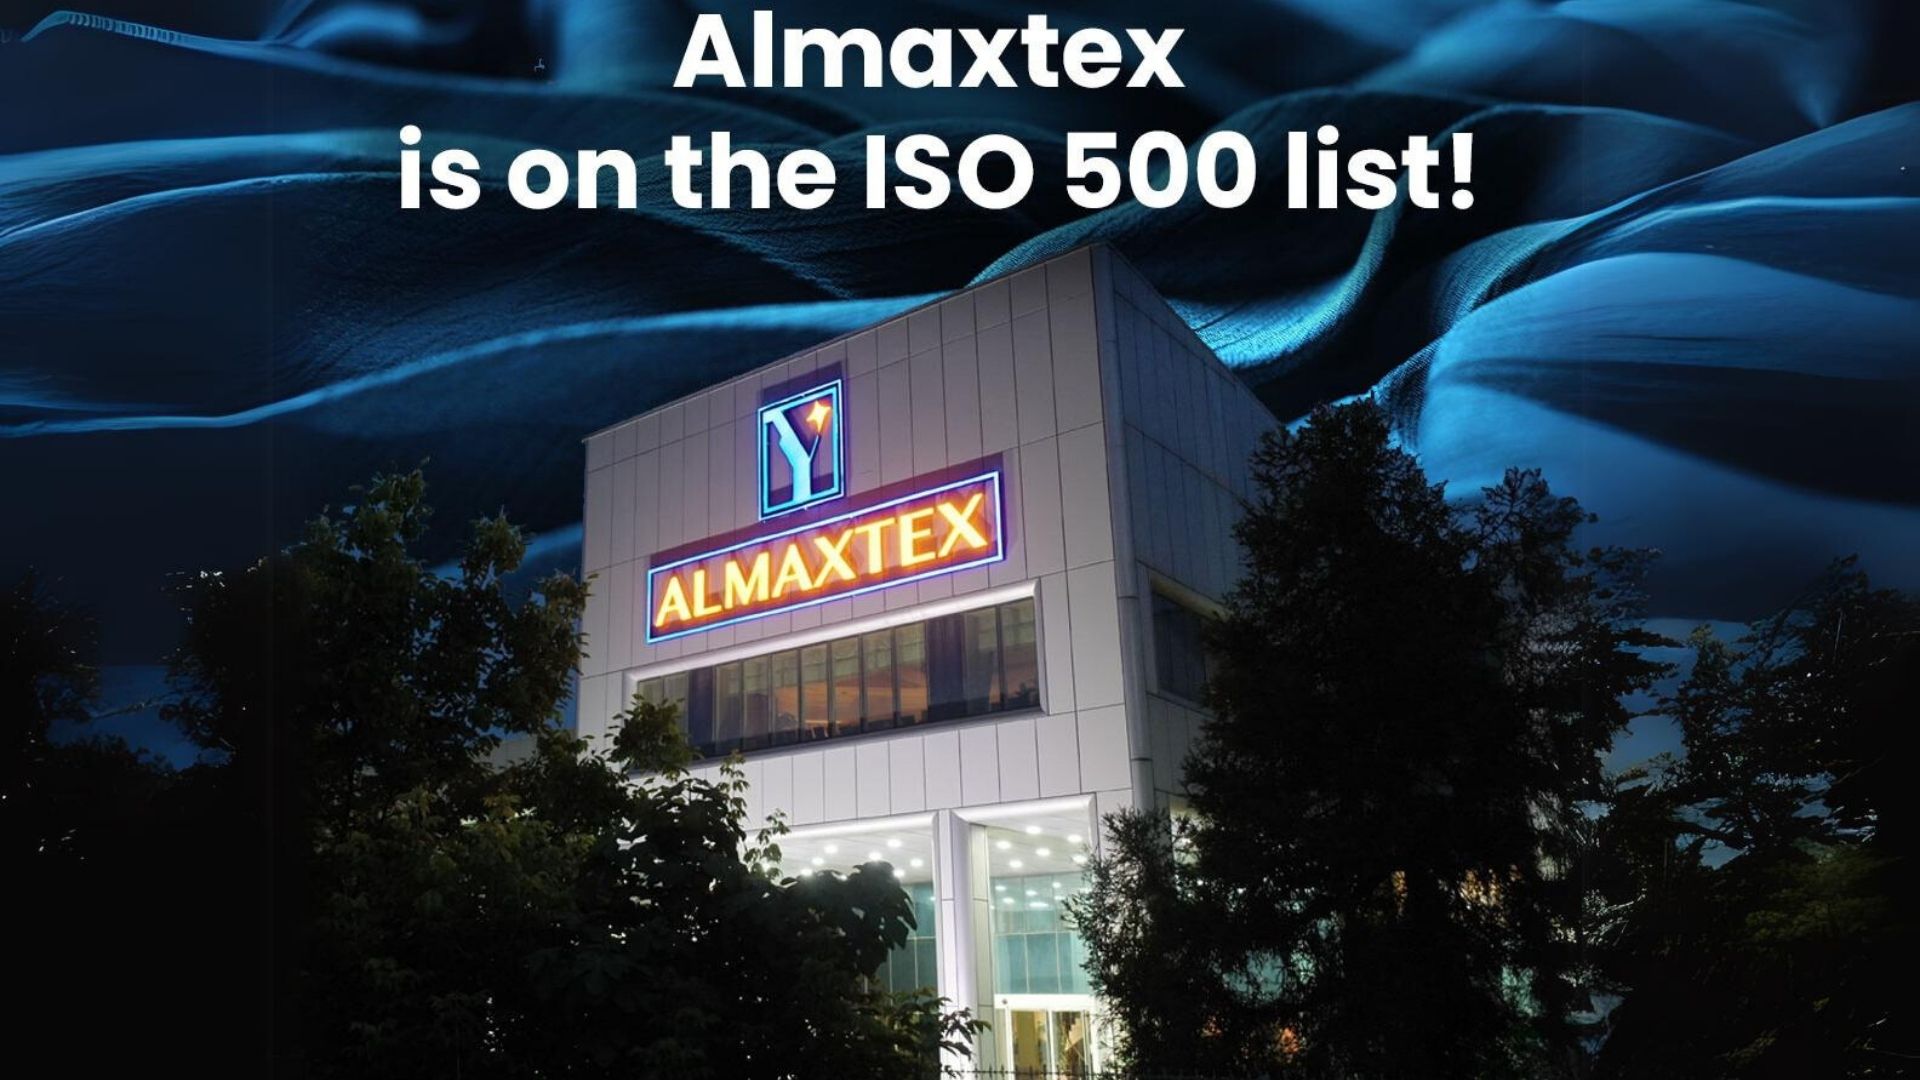 Almaxtex Textile is on the ISO 500 list!